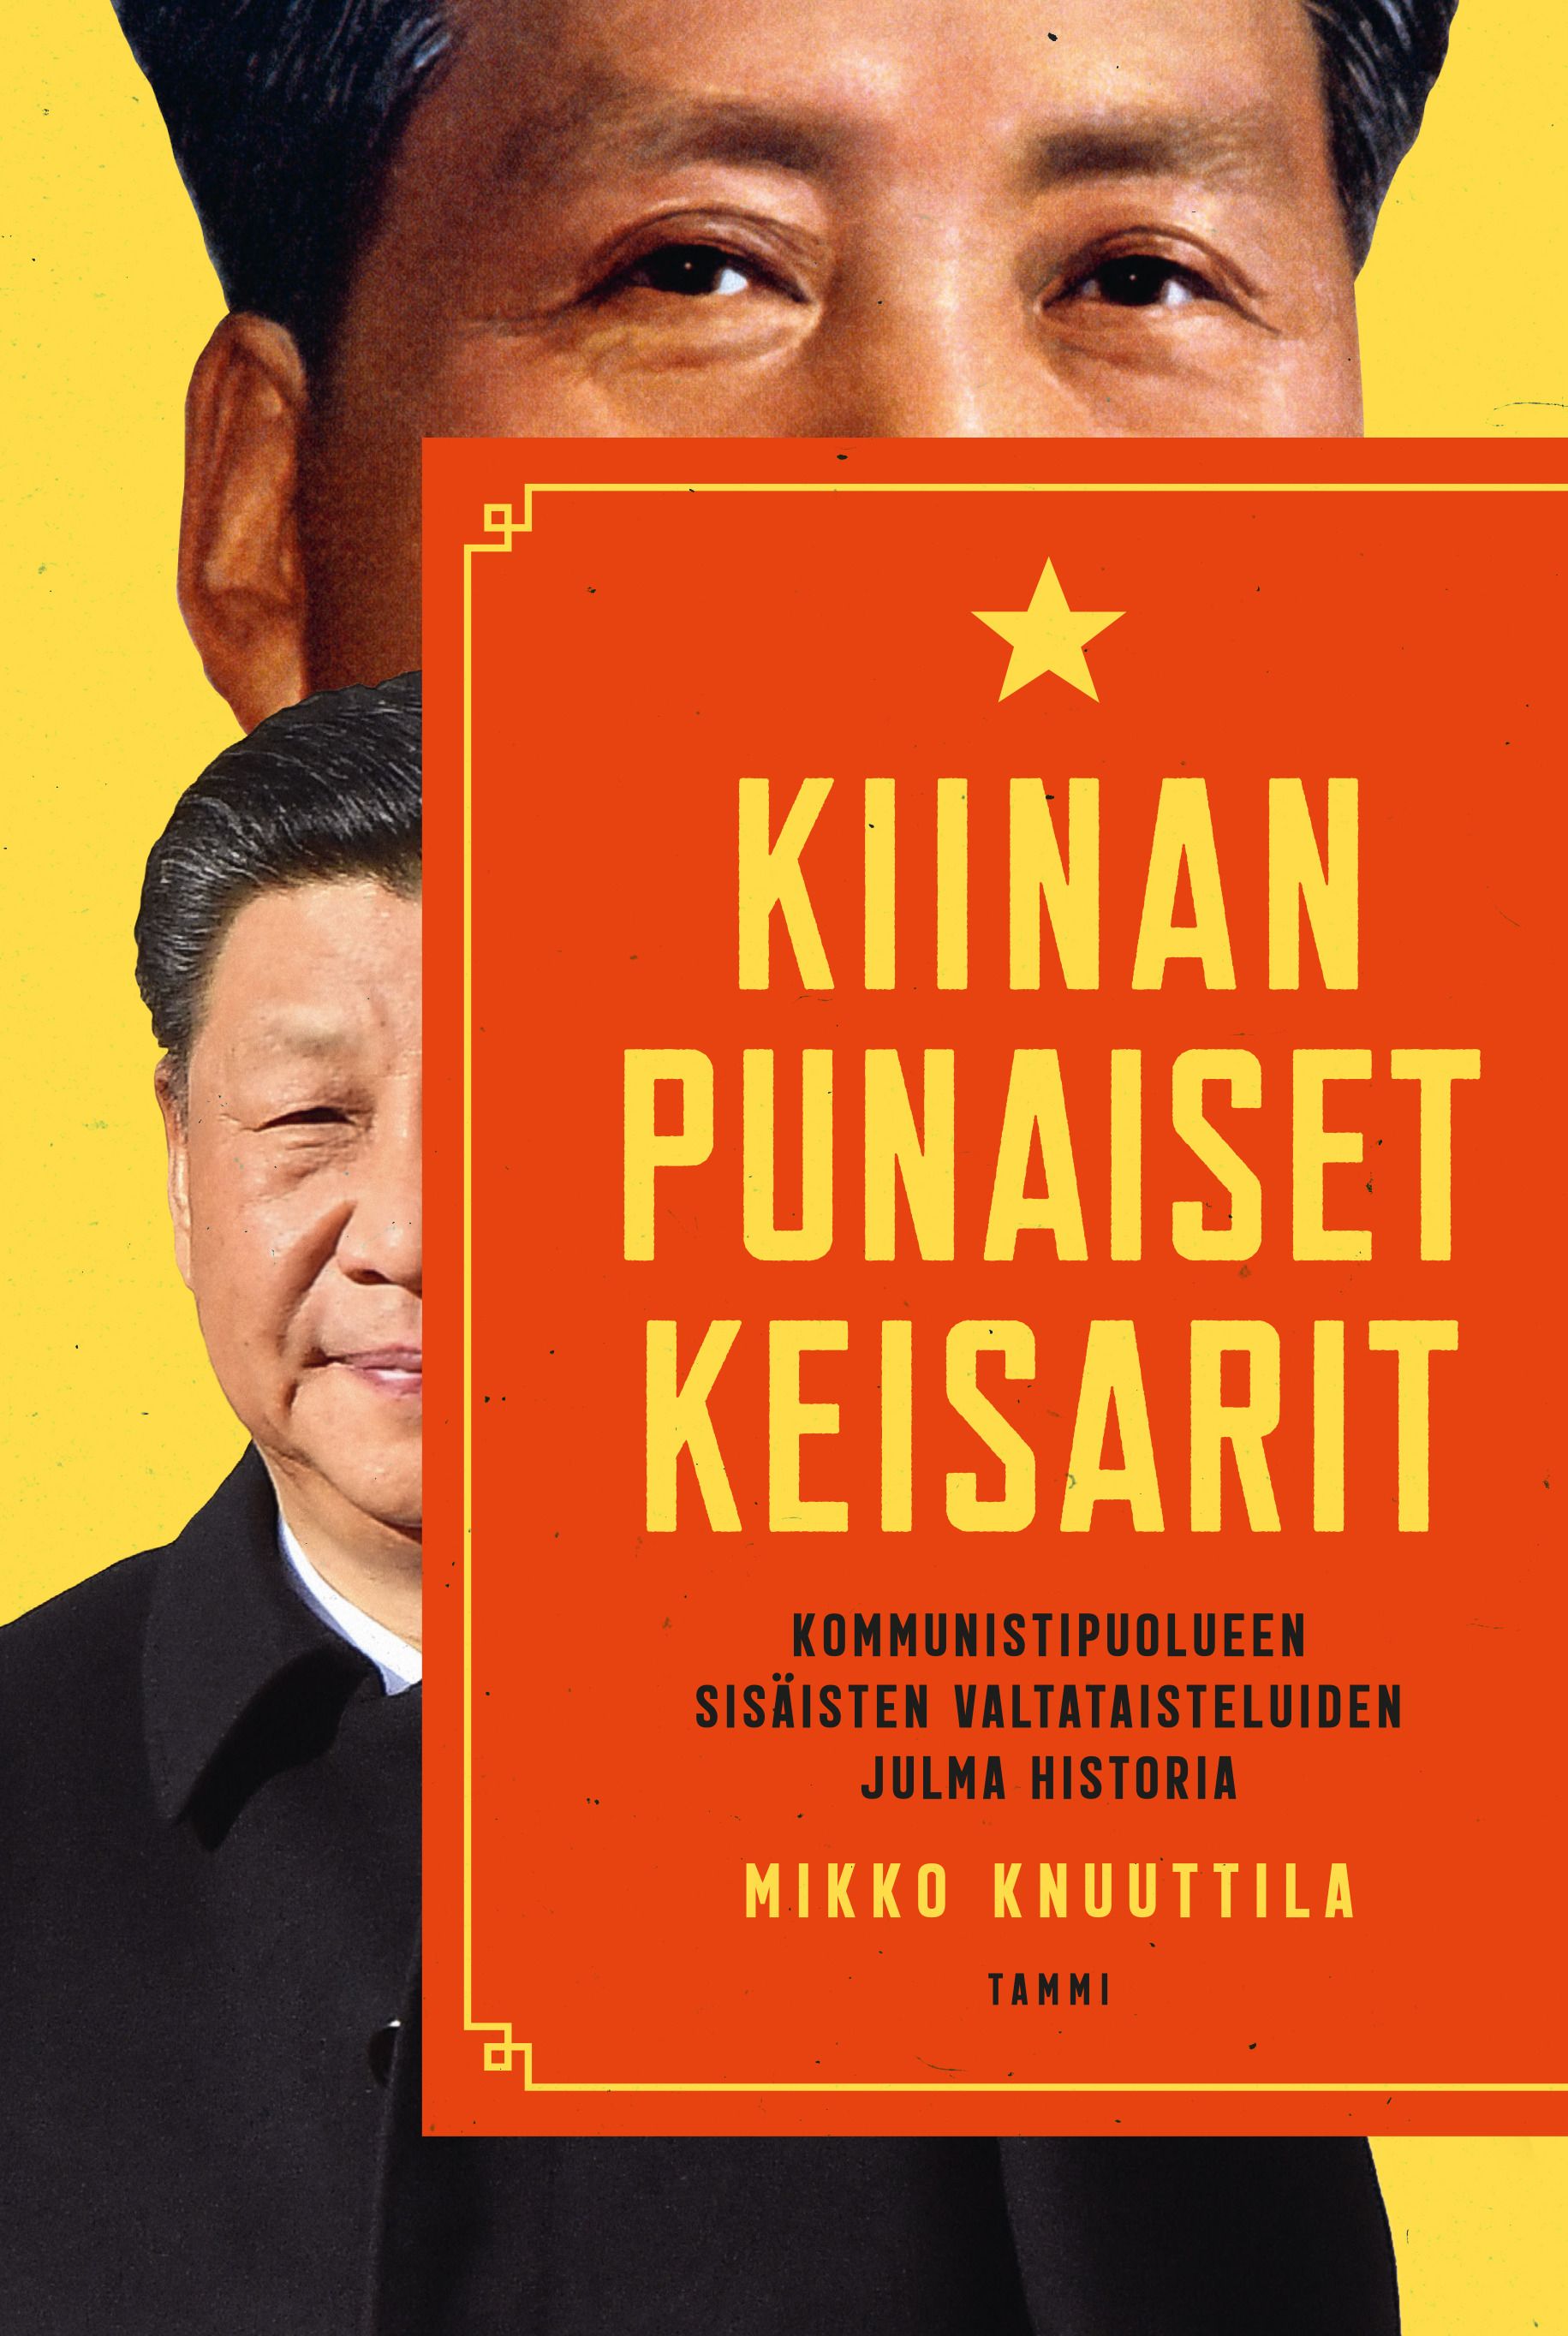 Mikko Knuuttila : Kiinan punaiset keisarit